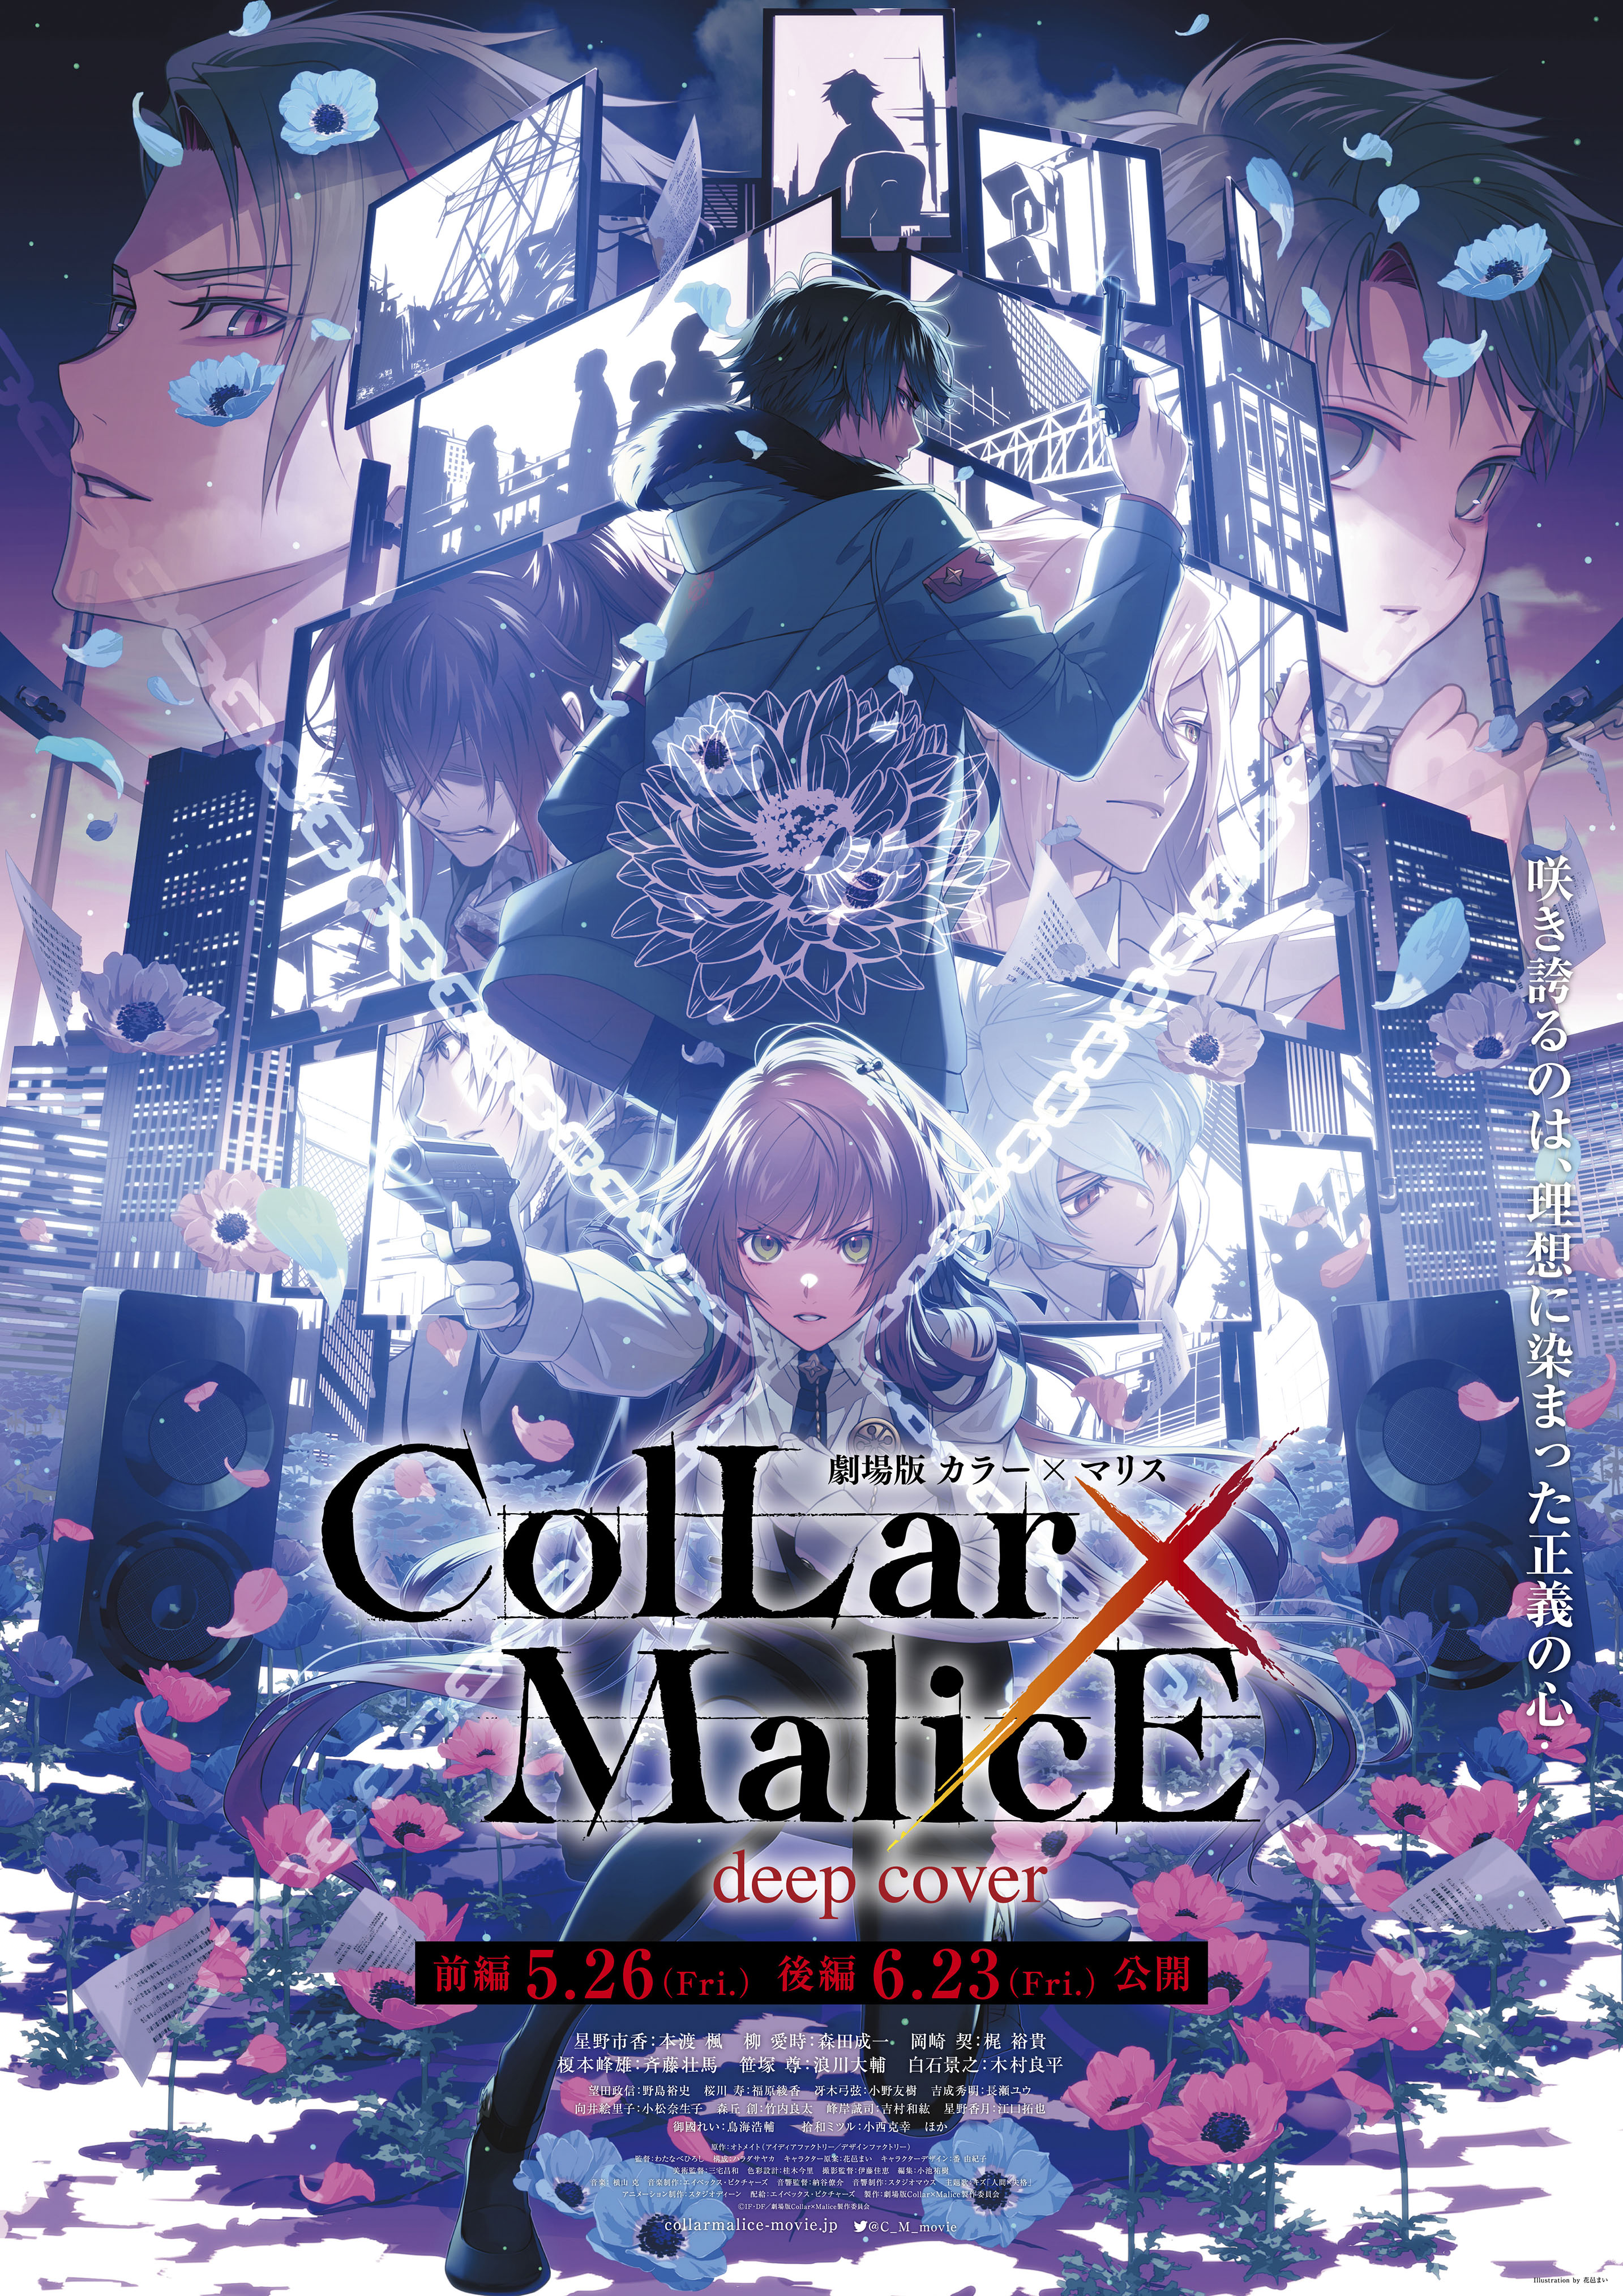 『劇場版 Collar×Malice -deep cover-』第2弾キービジュアル